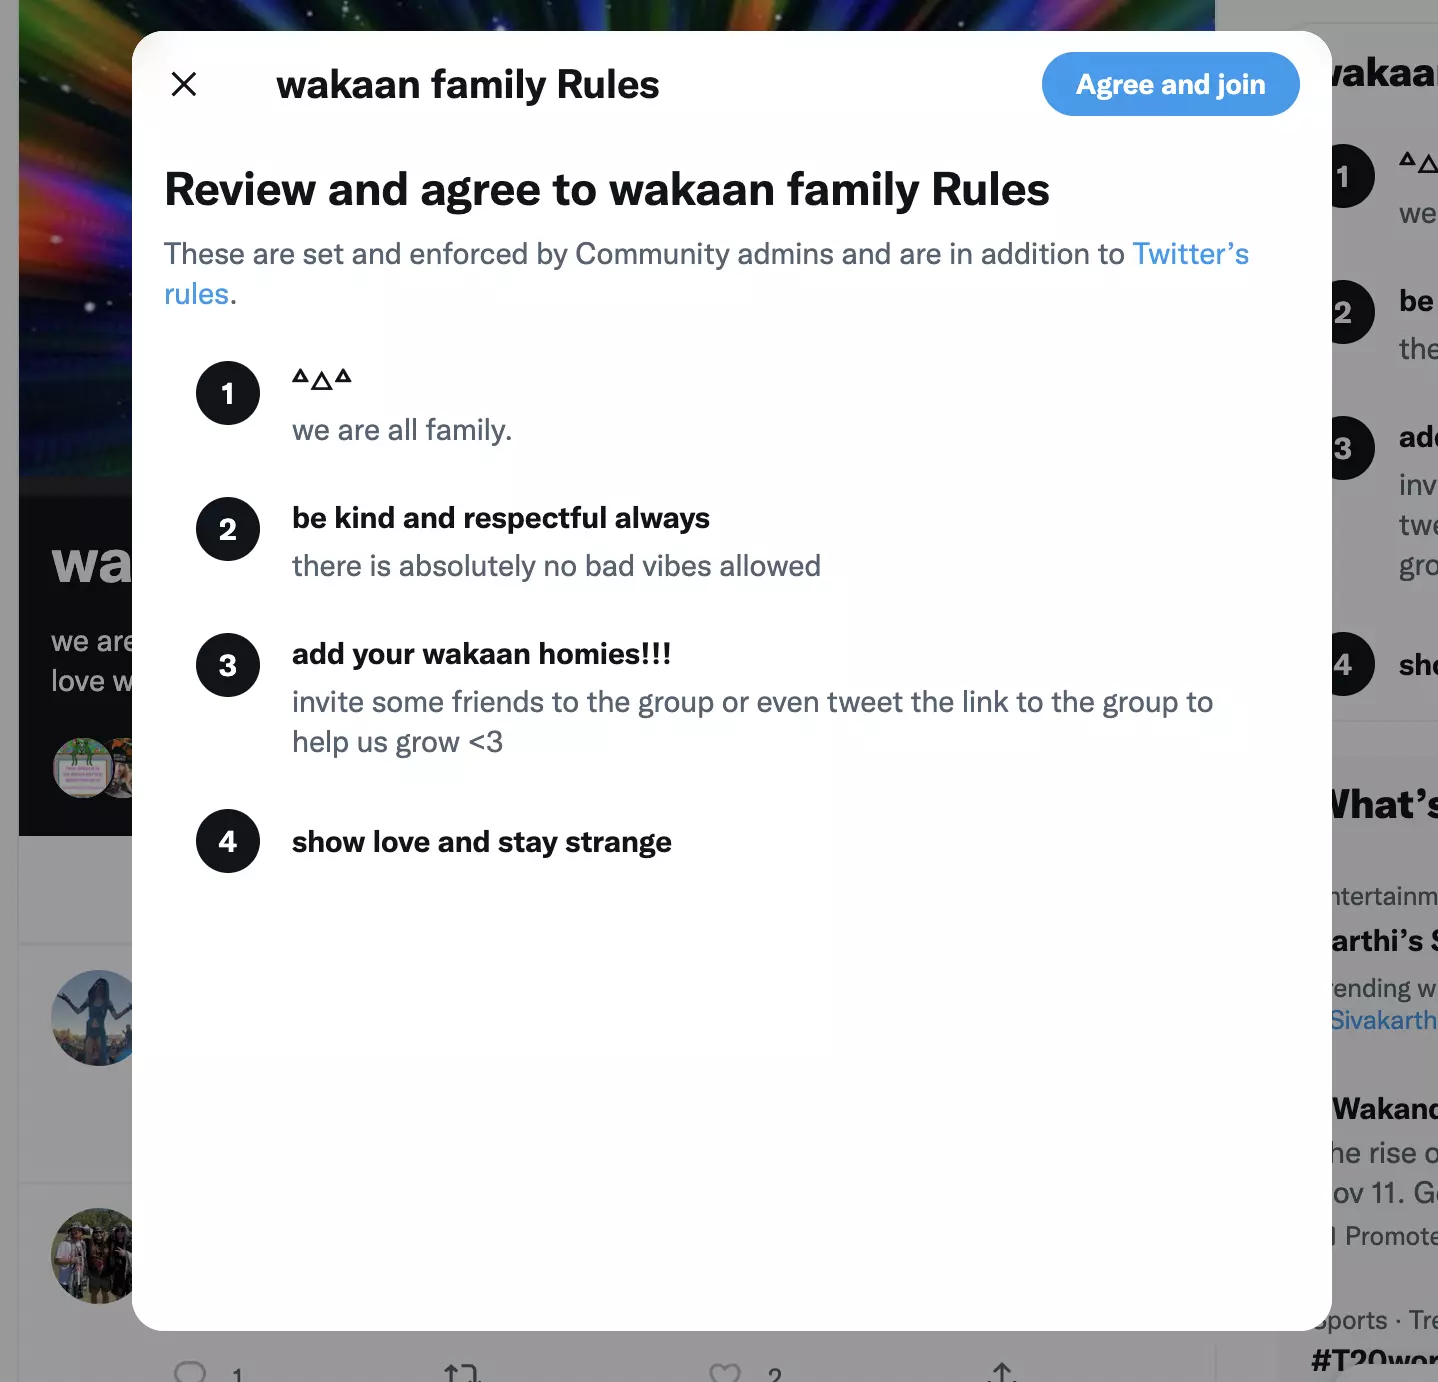 règles de la famille wakaan